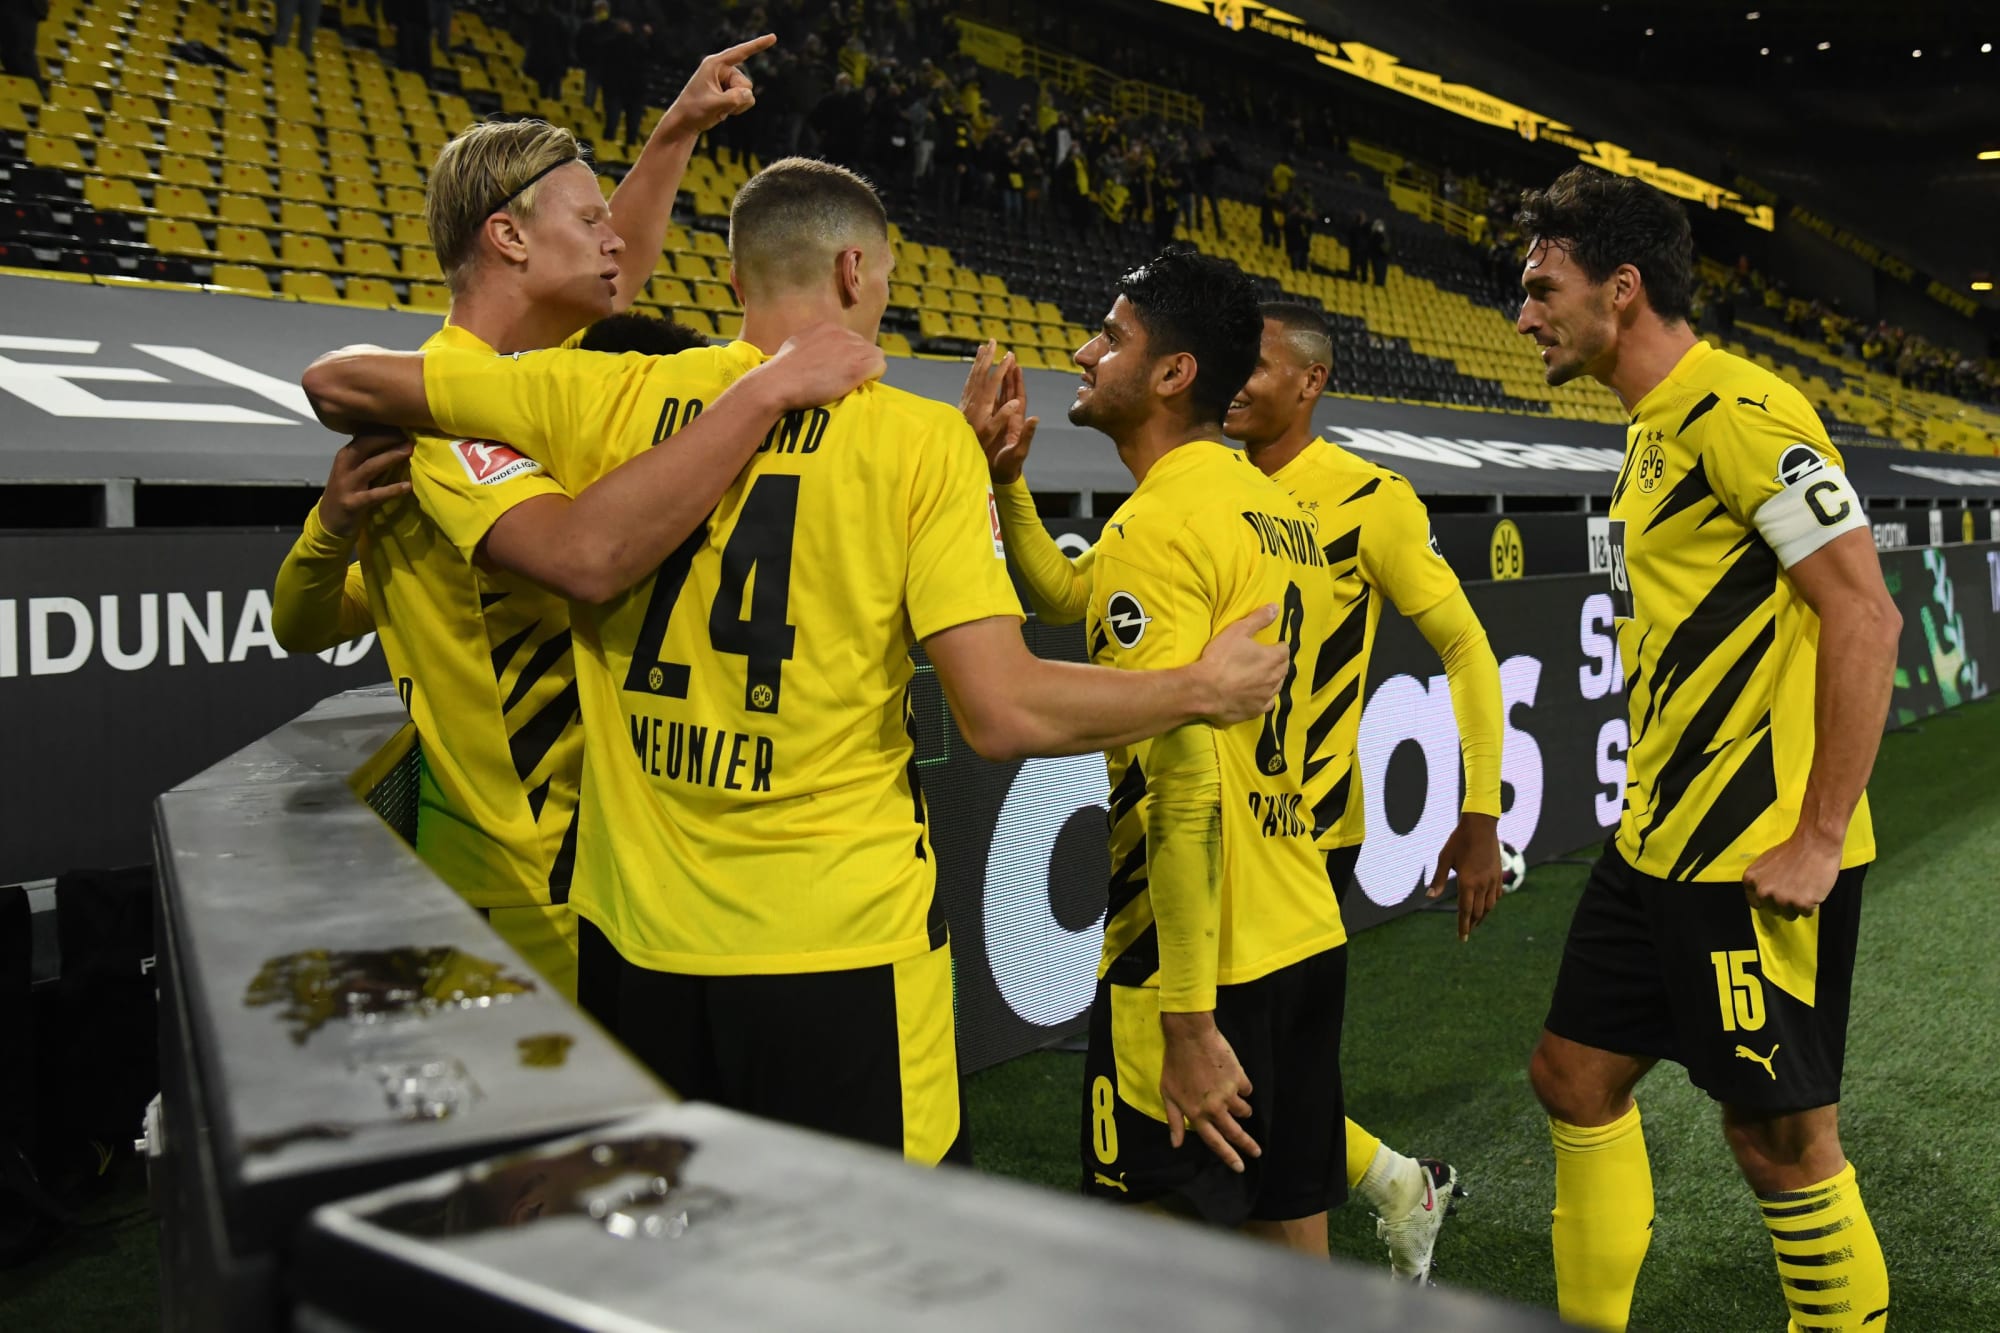 Borussia Dortmund 3-0 Schalke 04: Takeaways from dominant derby win